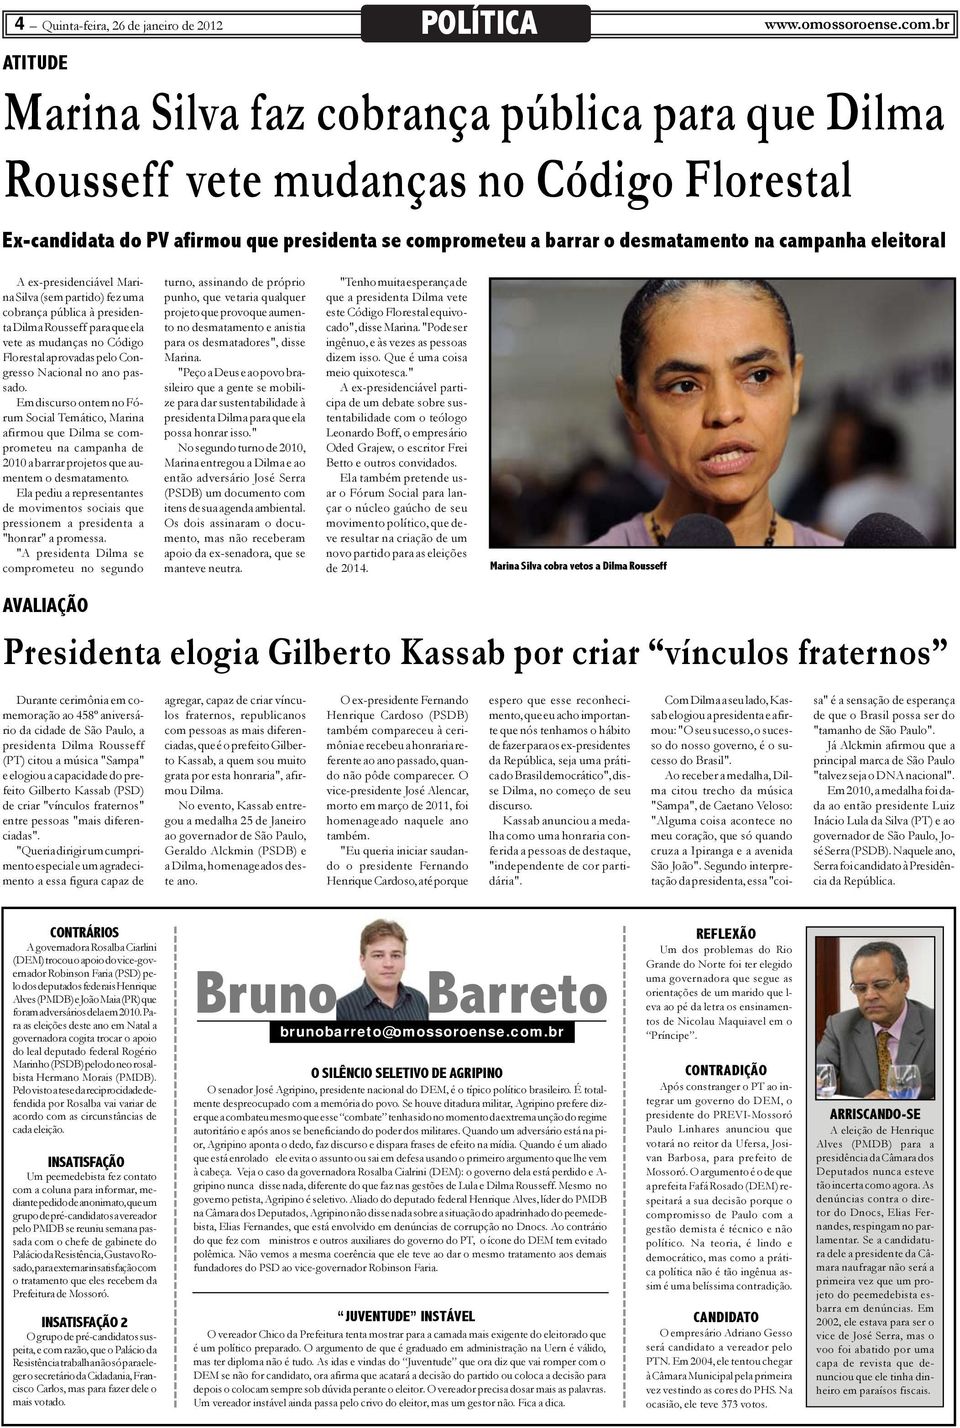 eleitoral A ex-presidenciável Marina Silva (sem partido) fez uma cobrança pública à presidenta Dilma Rousseff para que ela vete as mudanças no Código Florestal aprovadas pelo Congresso Nacional no